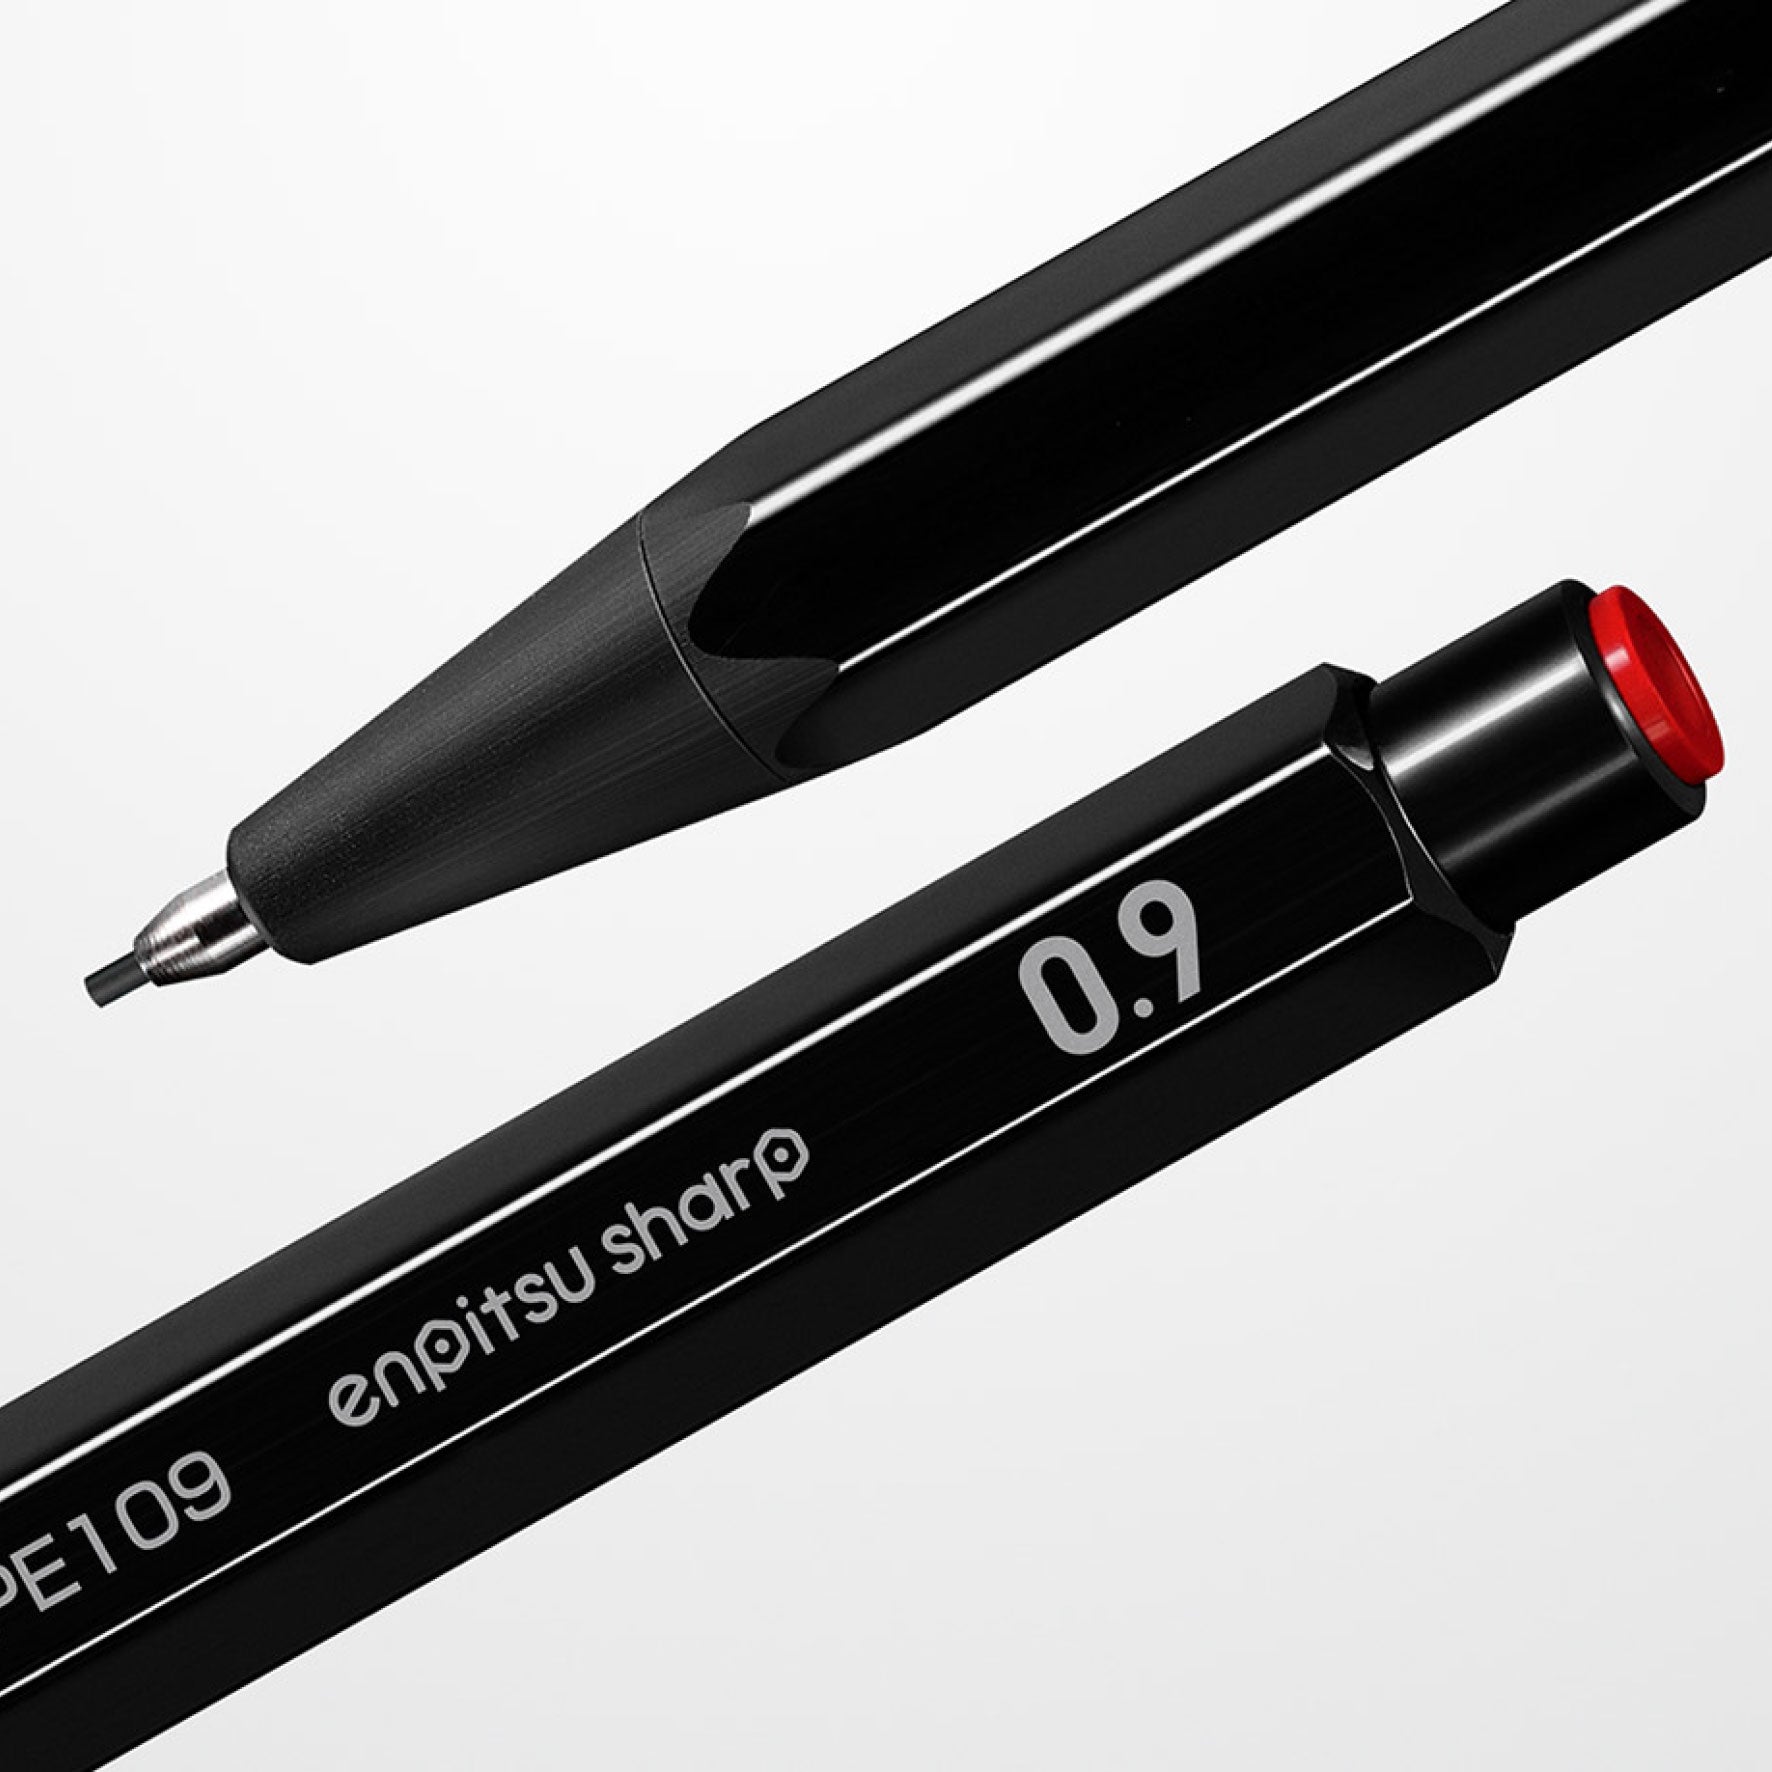 Kokuyo - Mechanical Pencil - Enpitsu Sharp - White